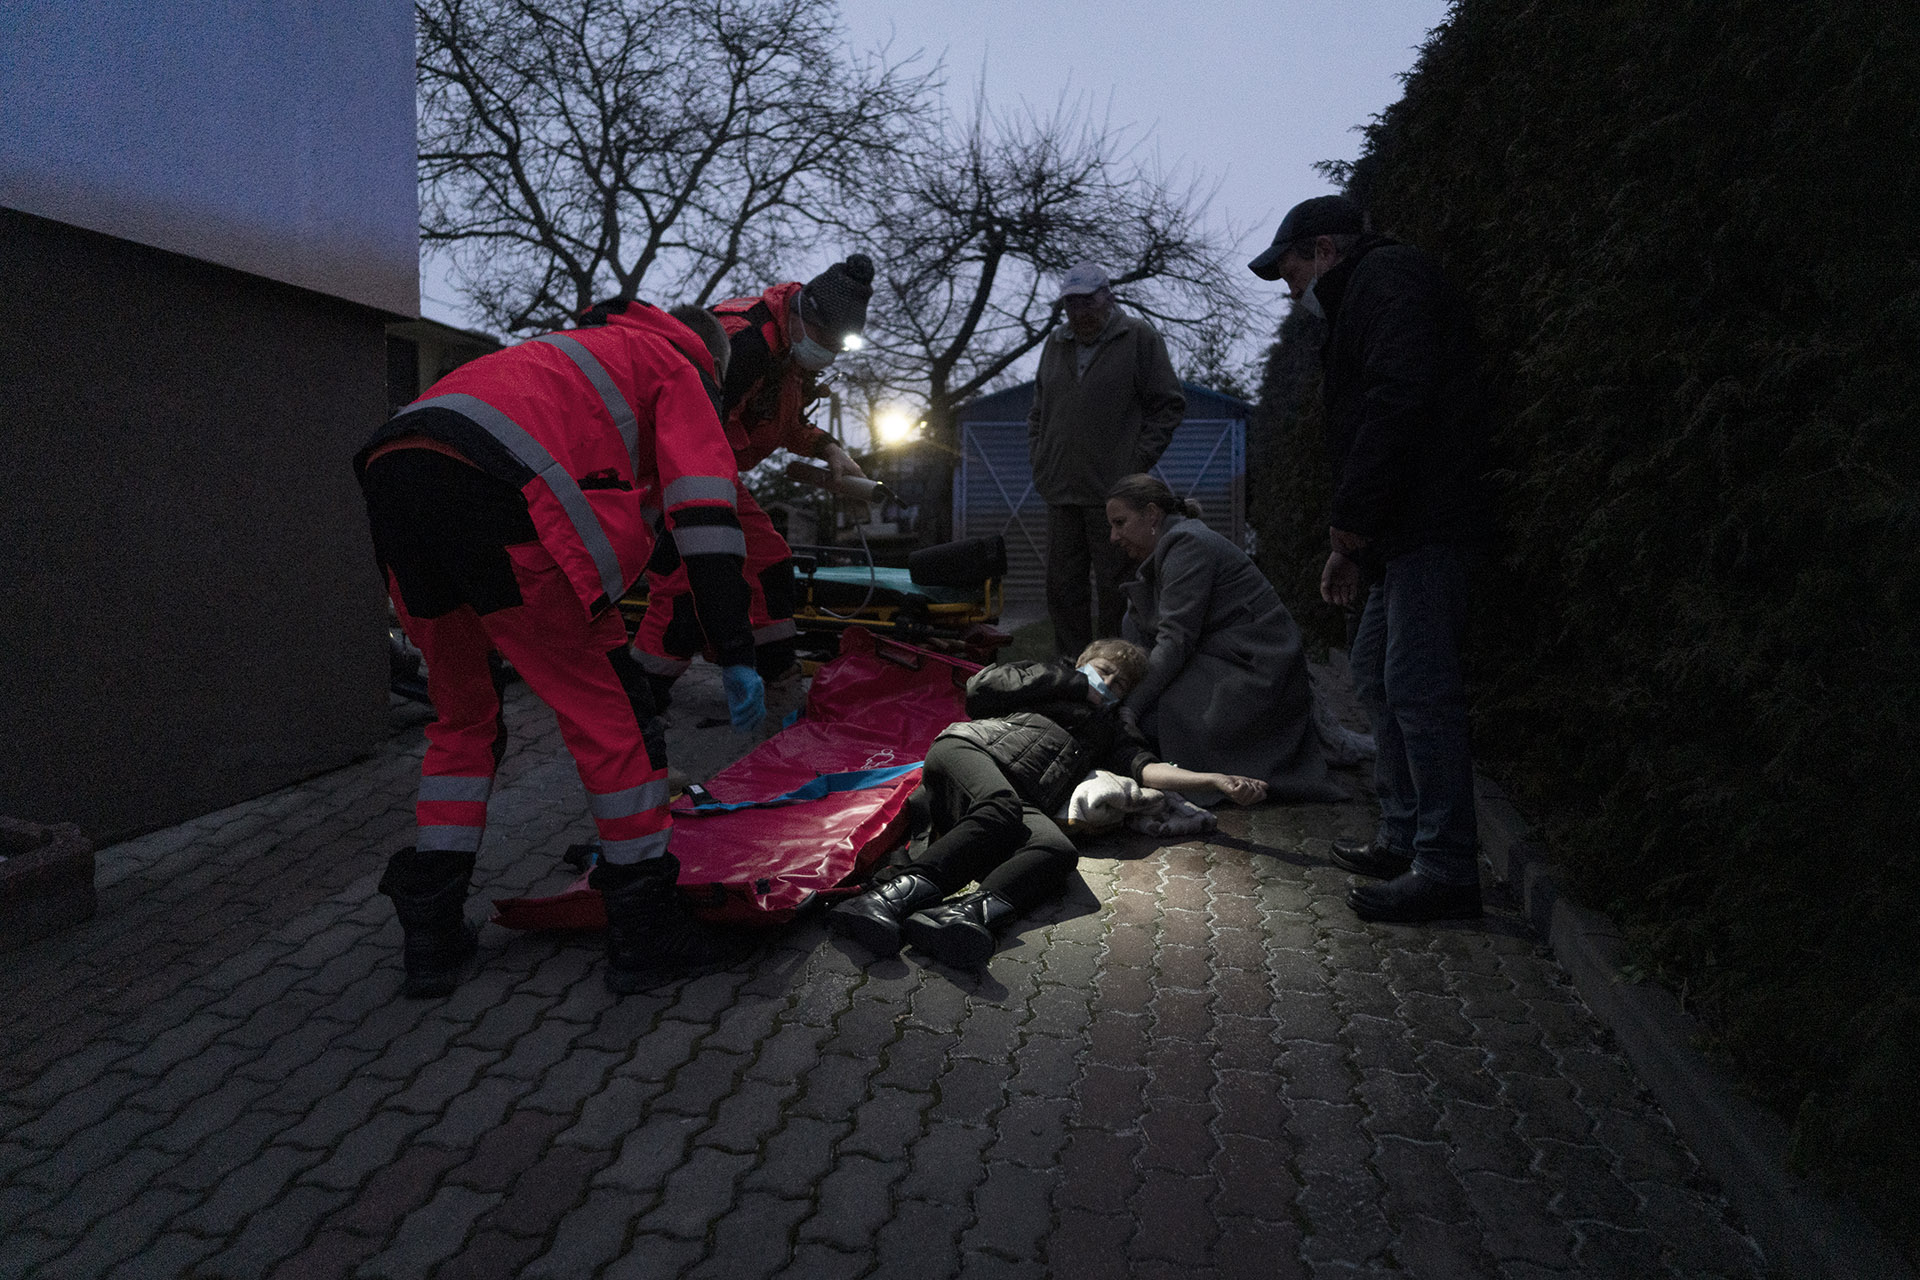 Ratownicy udzielają pomocy kobiecie, która złamała kość udową. W takiej akcji w pierwszej
kolejności podaje się leki przeciwbólowe, a następnie ewakuuje do szpitala.

